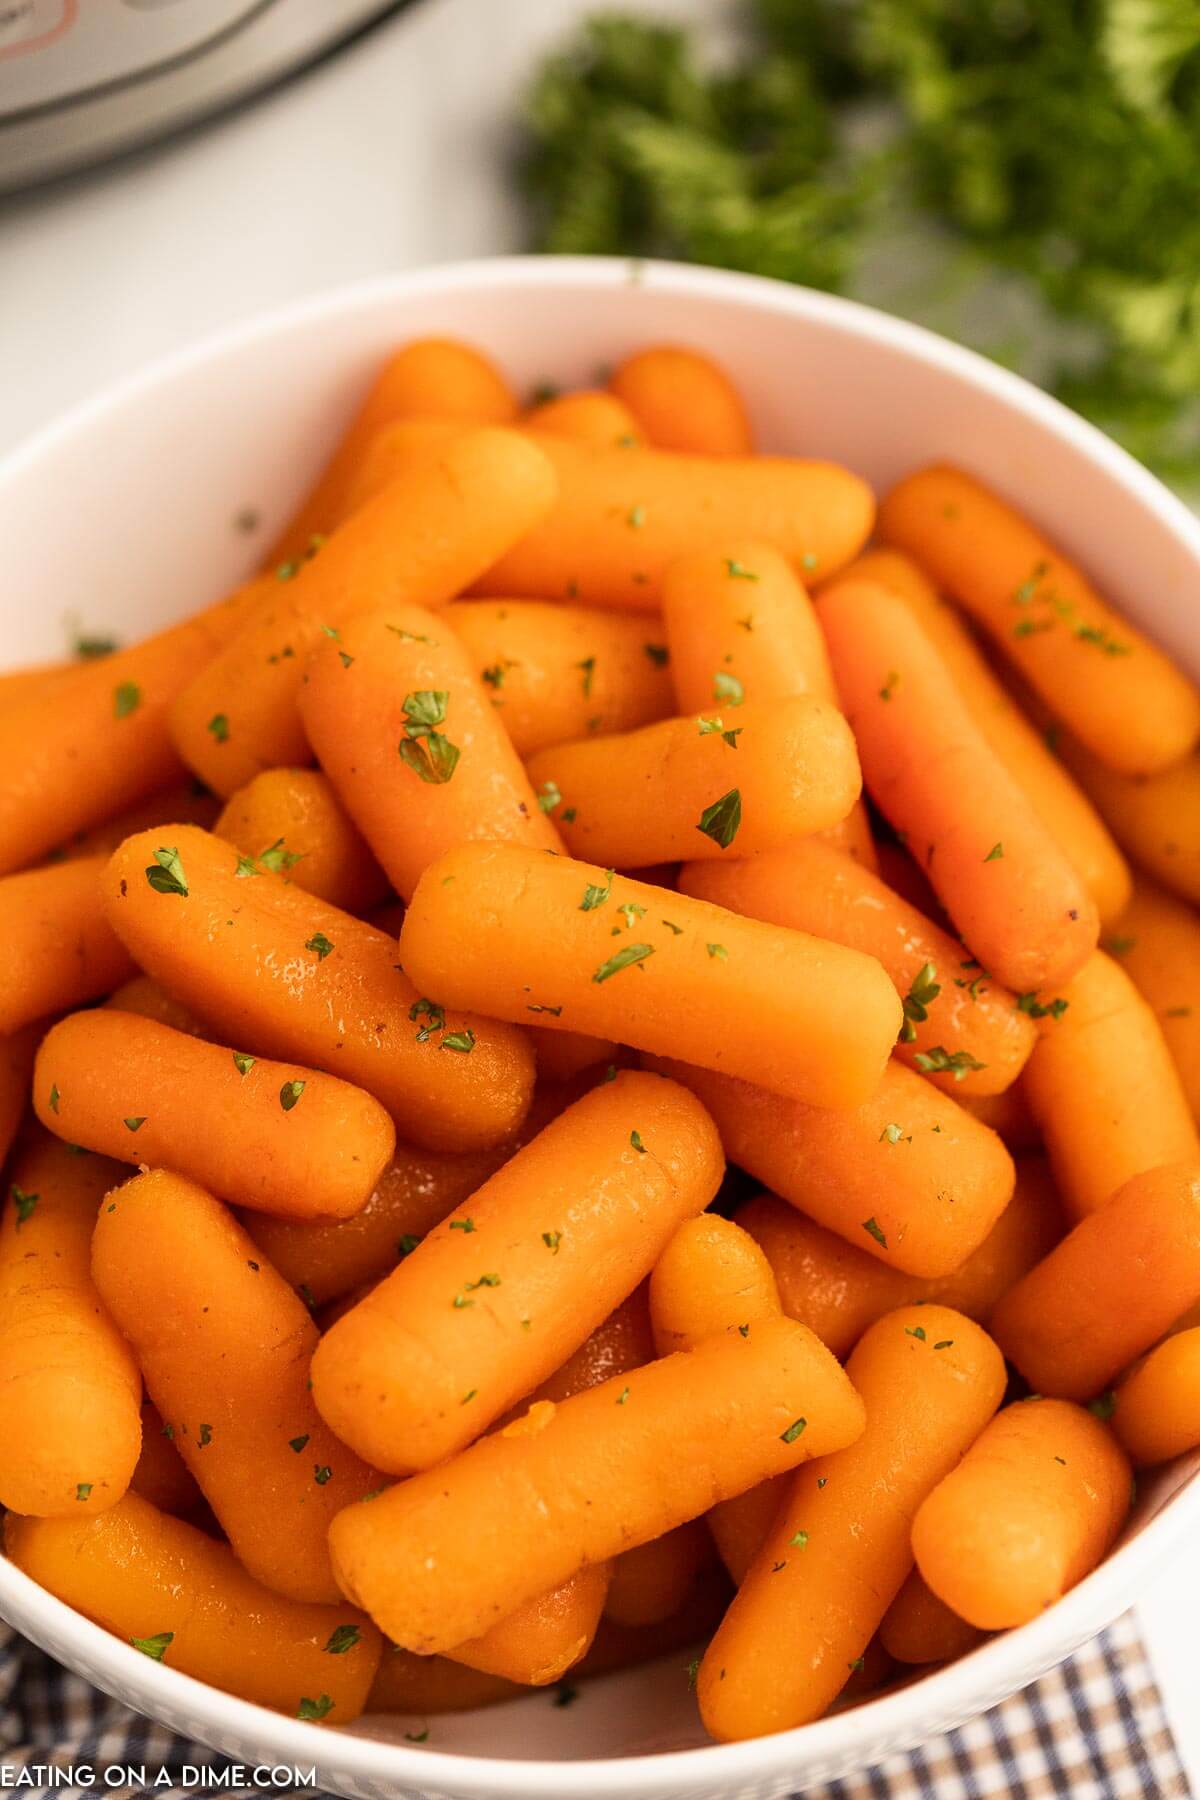 https://www.eatingonadime.com/wp-content/uploads/2023/03/ip-glazed-carrots-10.jpg